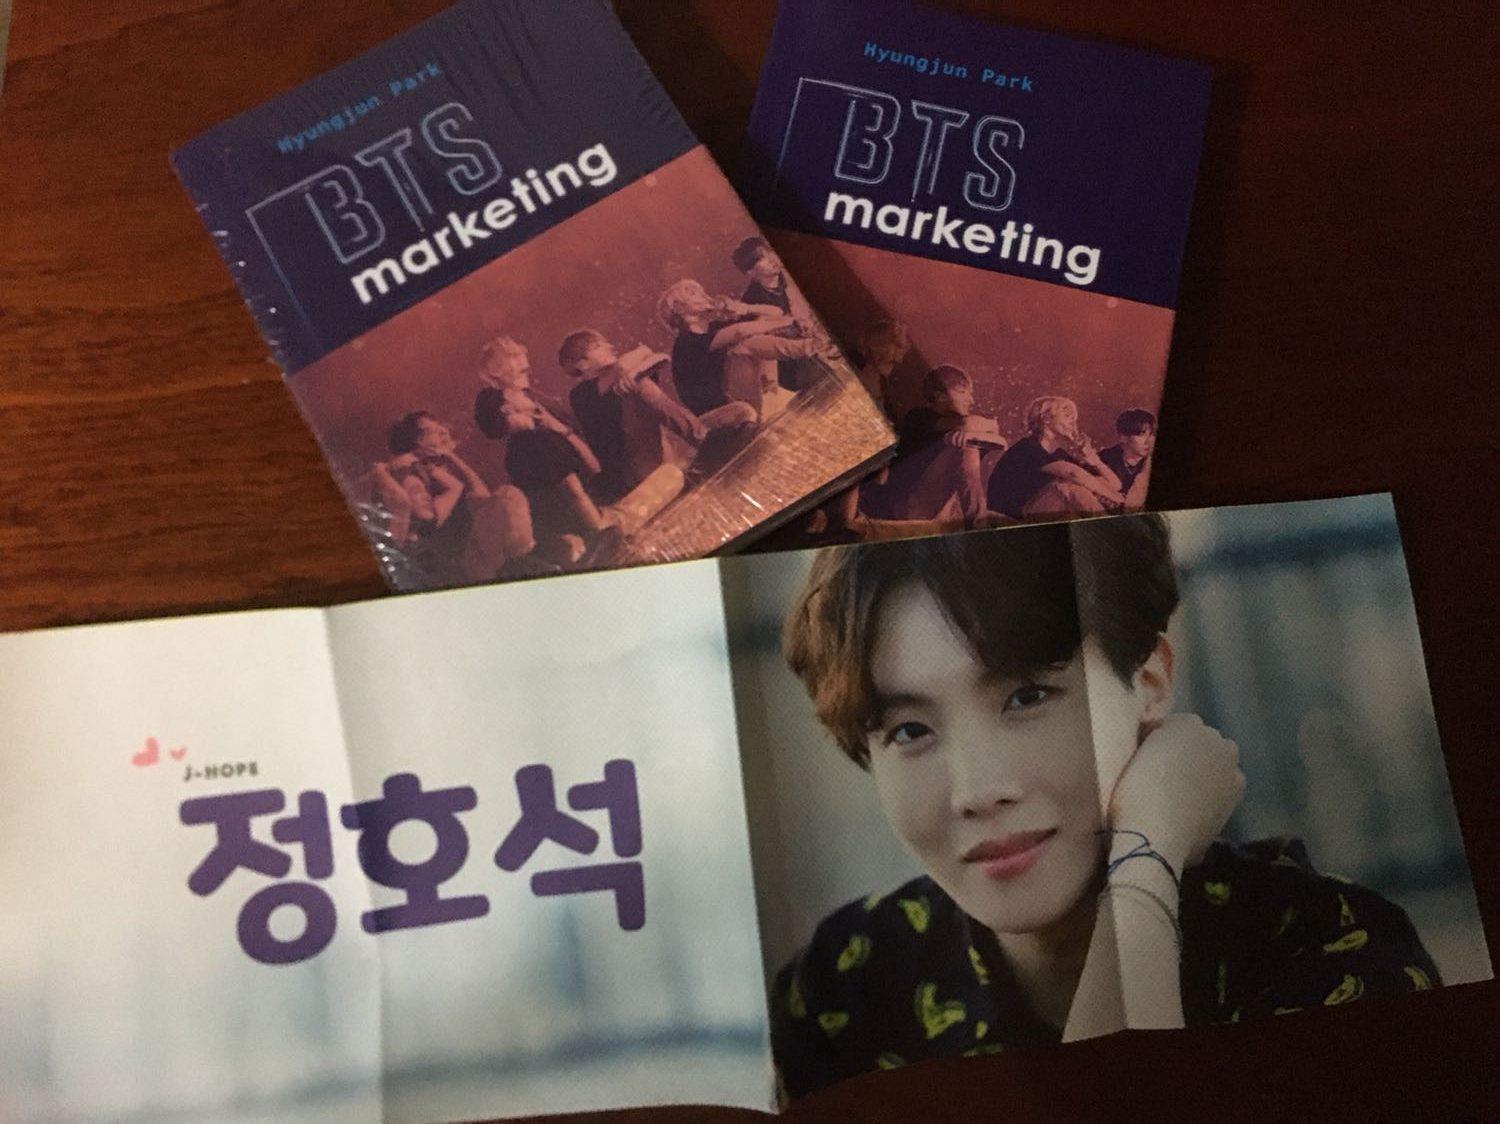 “ BTS Marketing ” – Nghệ thuật marketing khéo léo từ dàn K-pop xứ Hàn